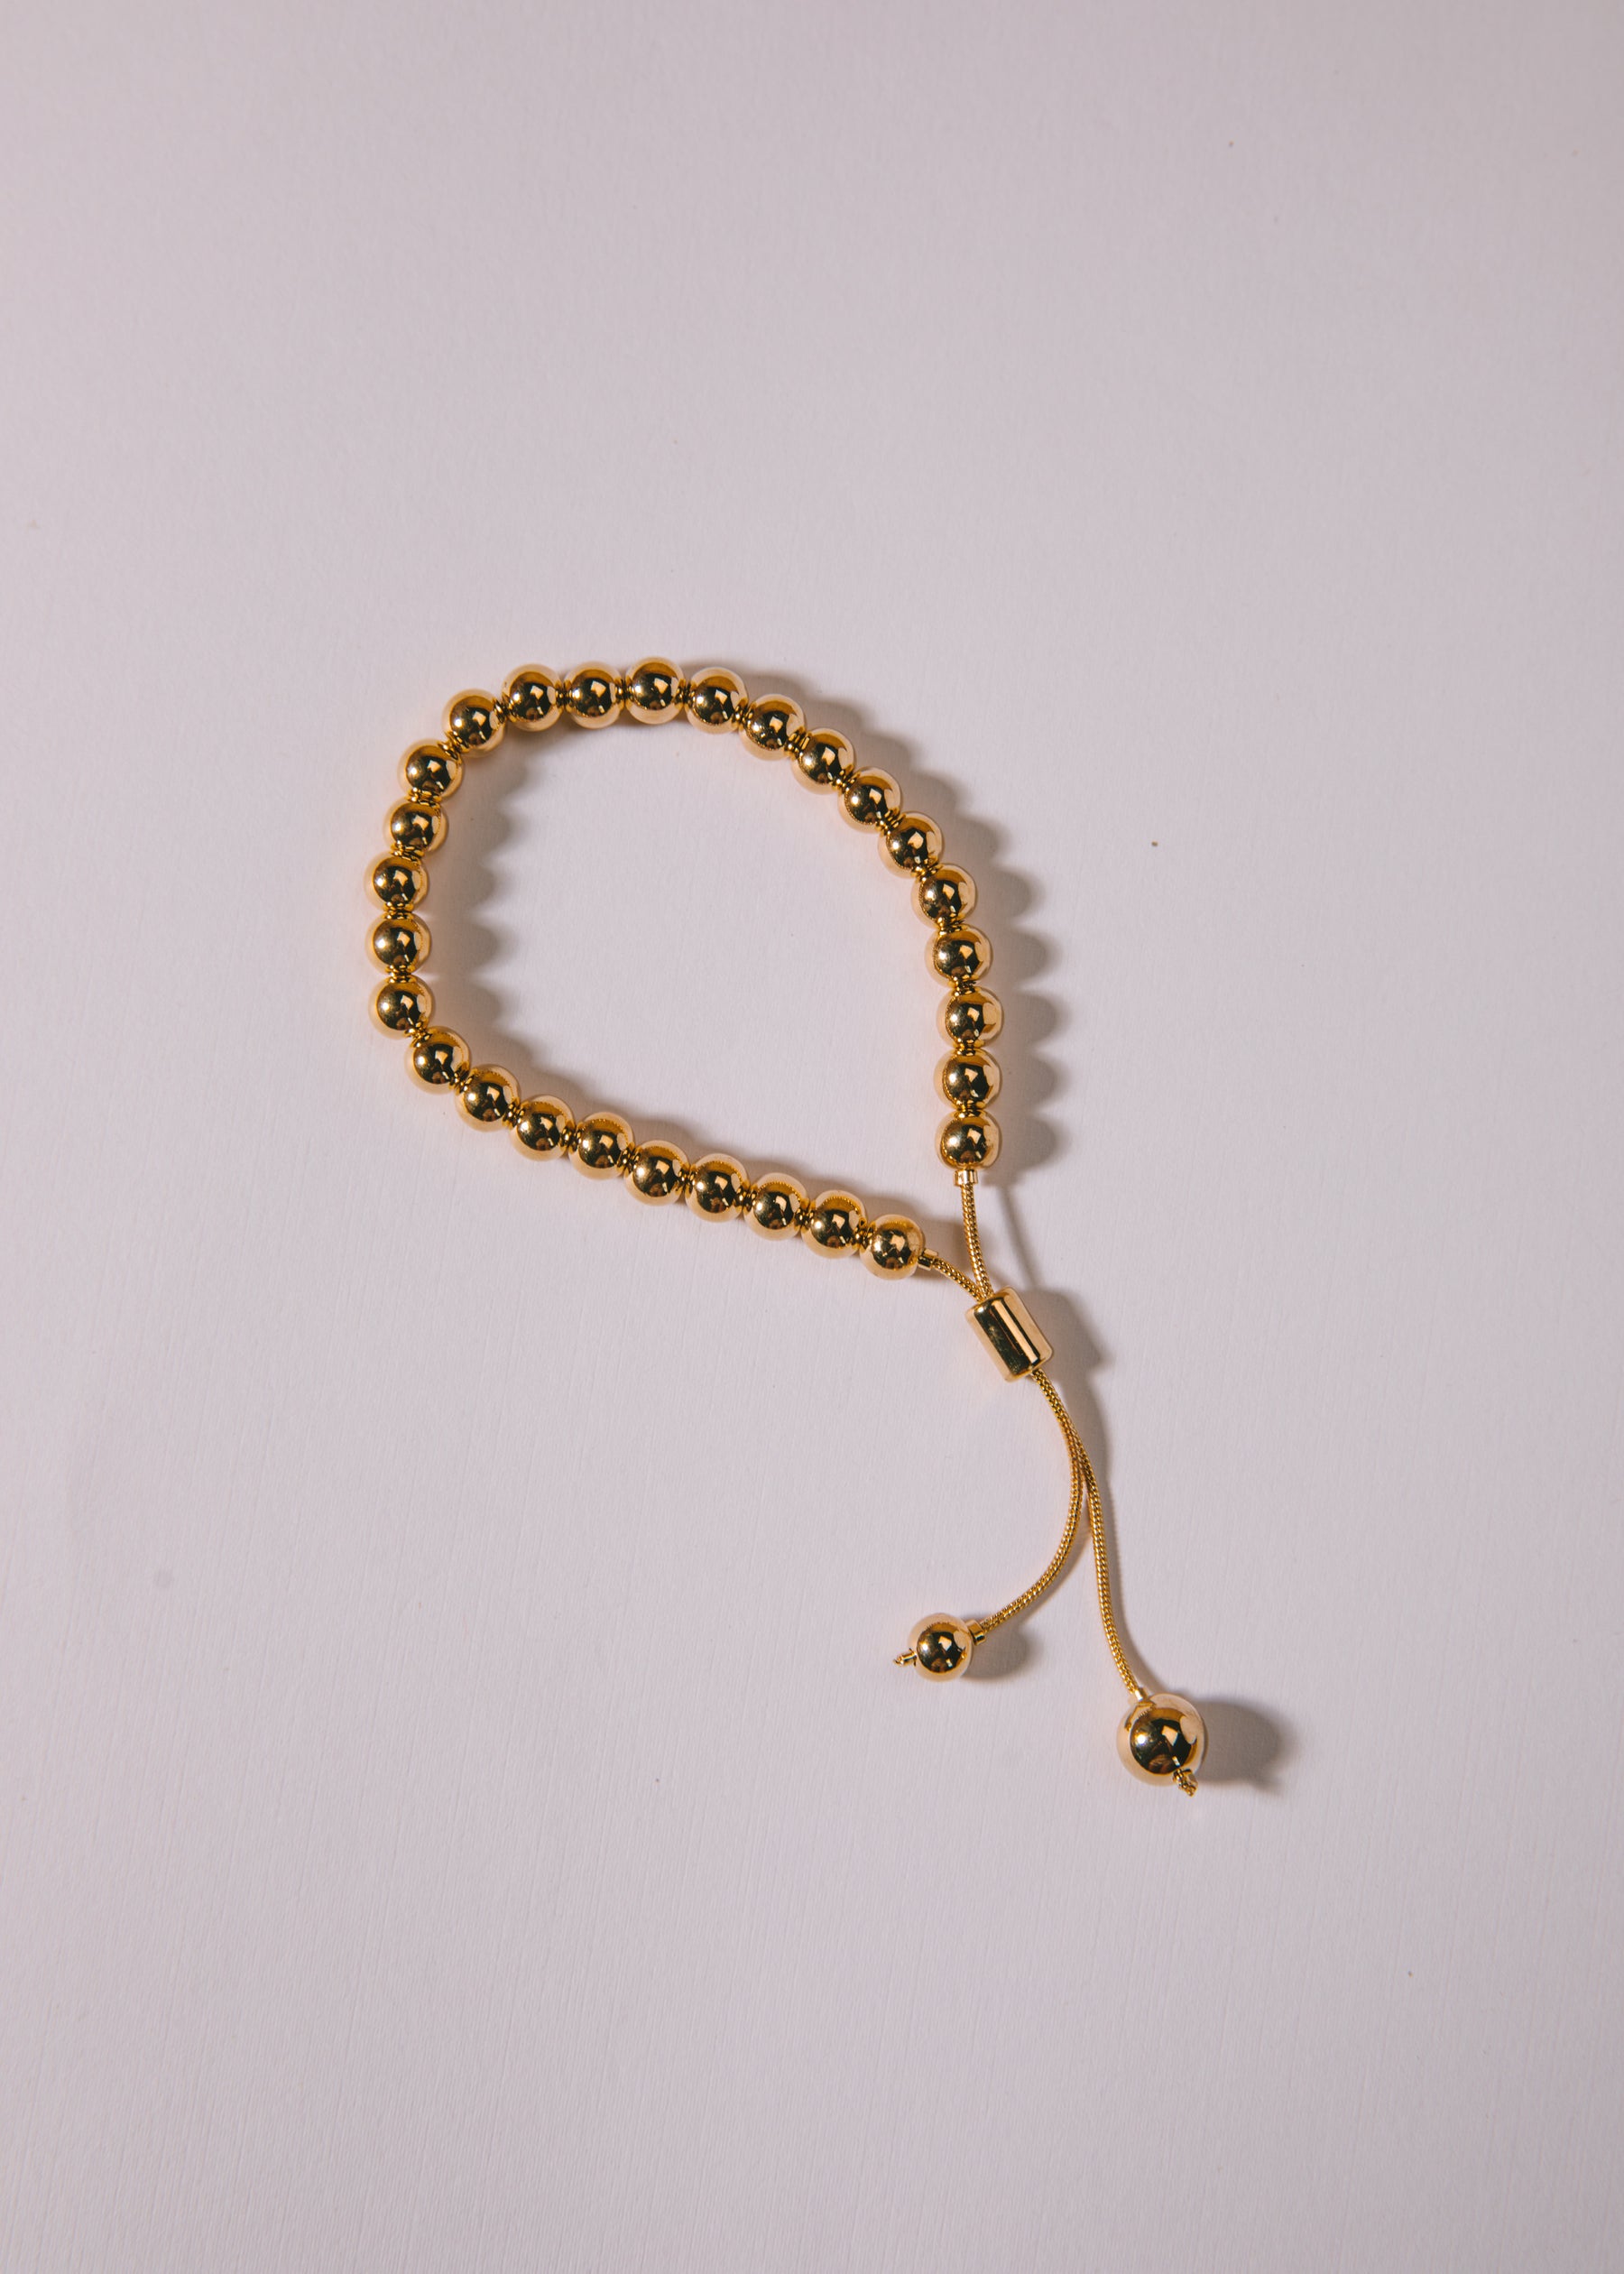 Adjustable Gold Ball Bracelet